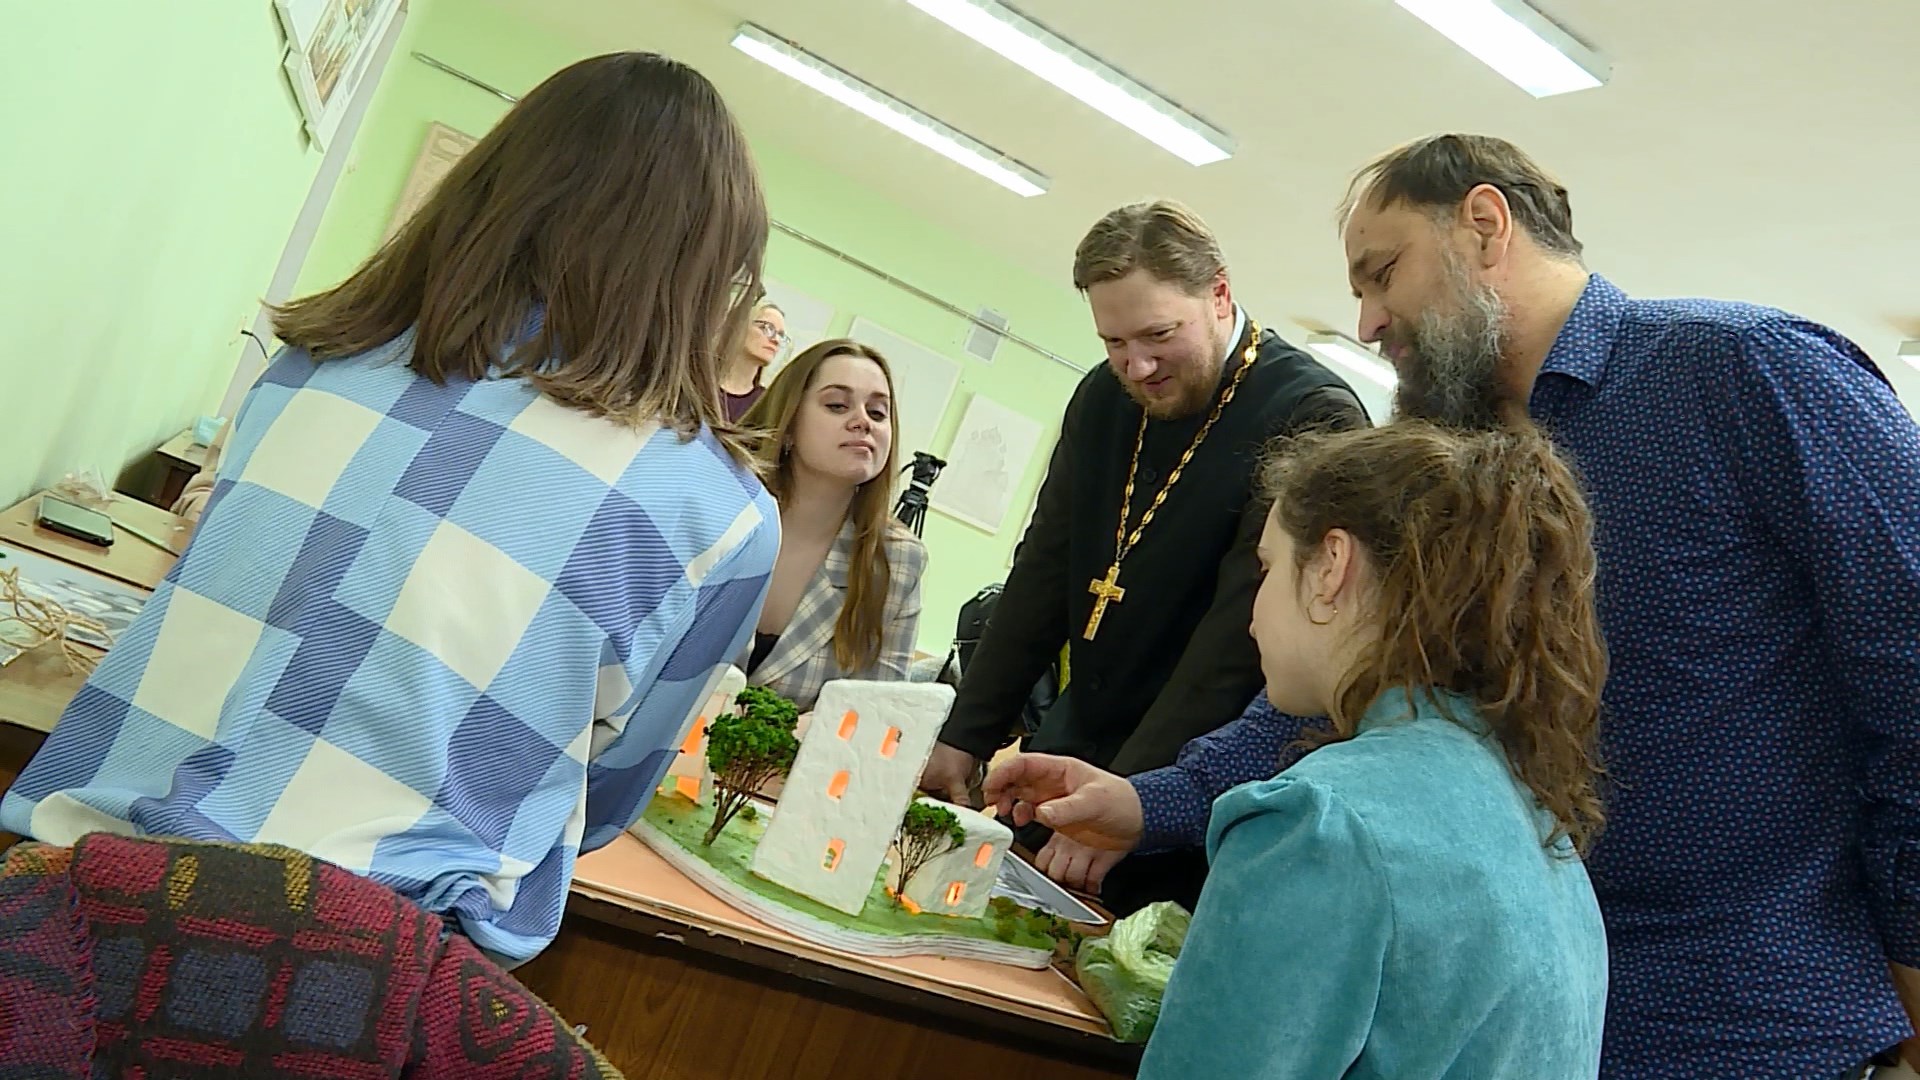 Студенты-архитекторы из Костромской сельхозакадемии взялись за проекты для семей с особенными детьми